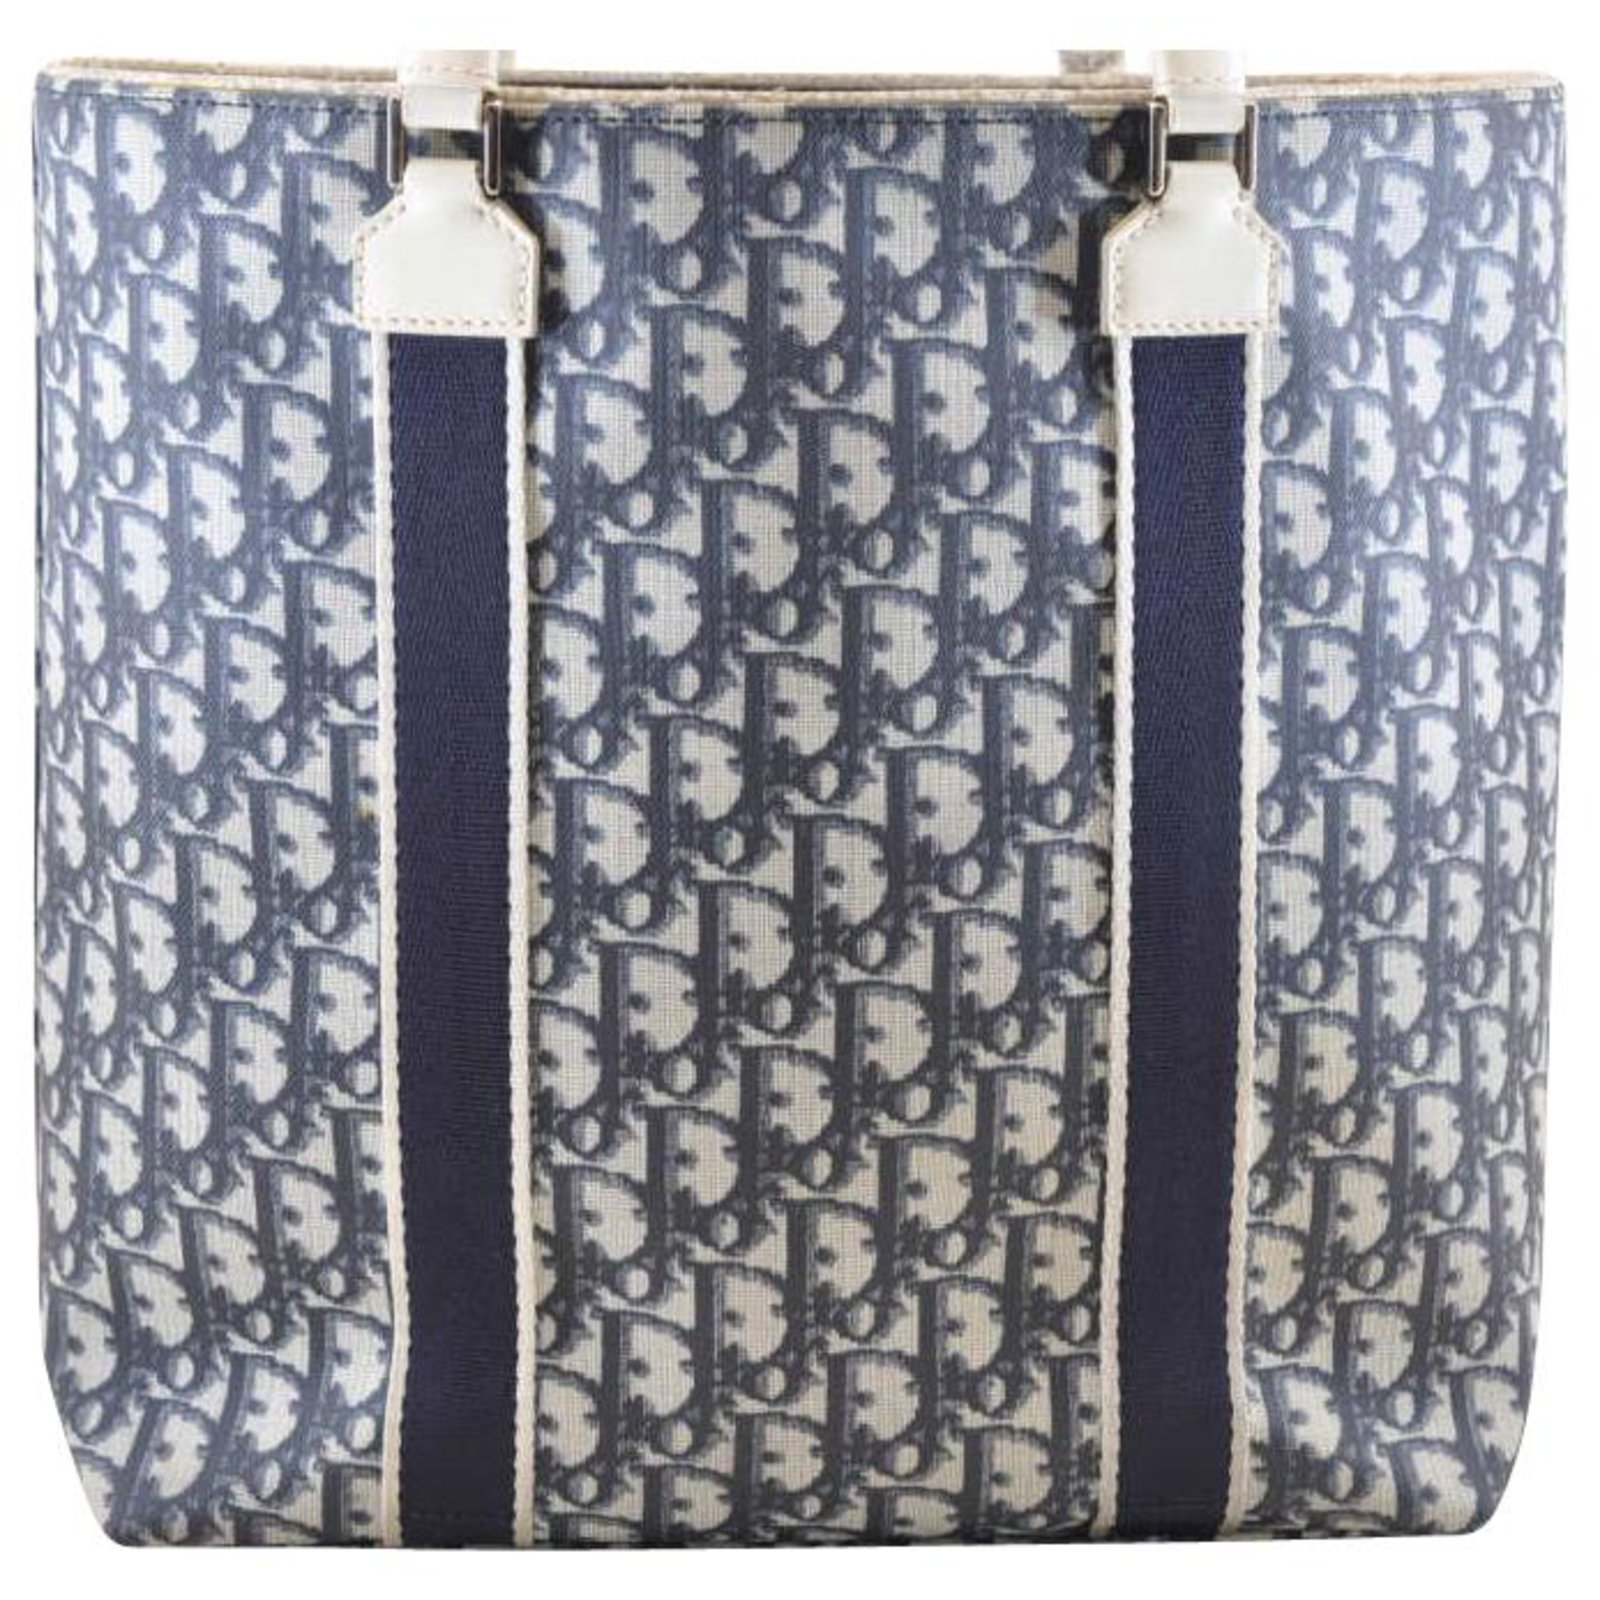 Christian Dior Trotter Shoulder Bag Blue Canvas Vintage 5910328inch   eBay